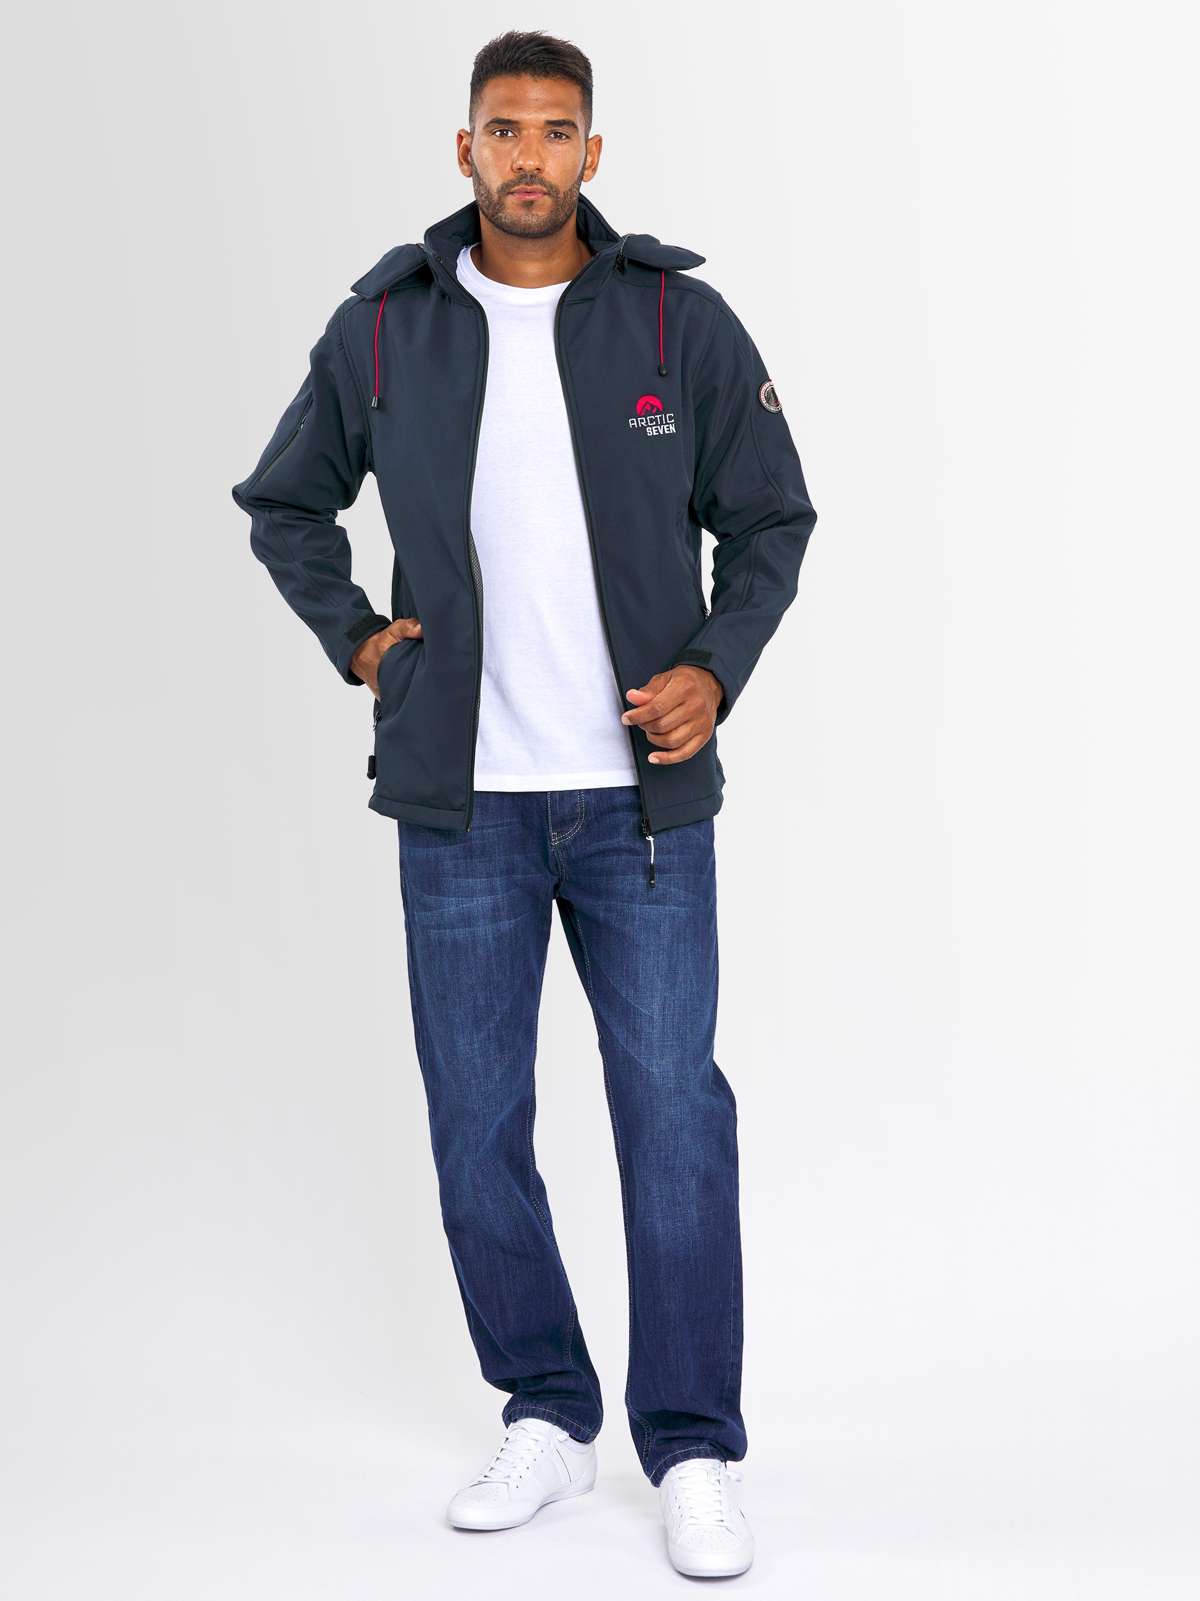 Куртка Softshell, спортивная куртка для активного отдыха со съемным капюшоном.